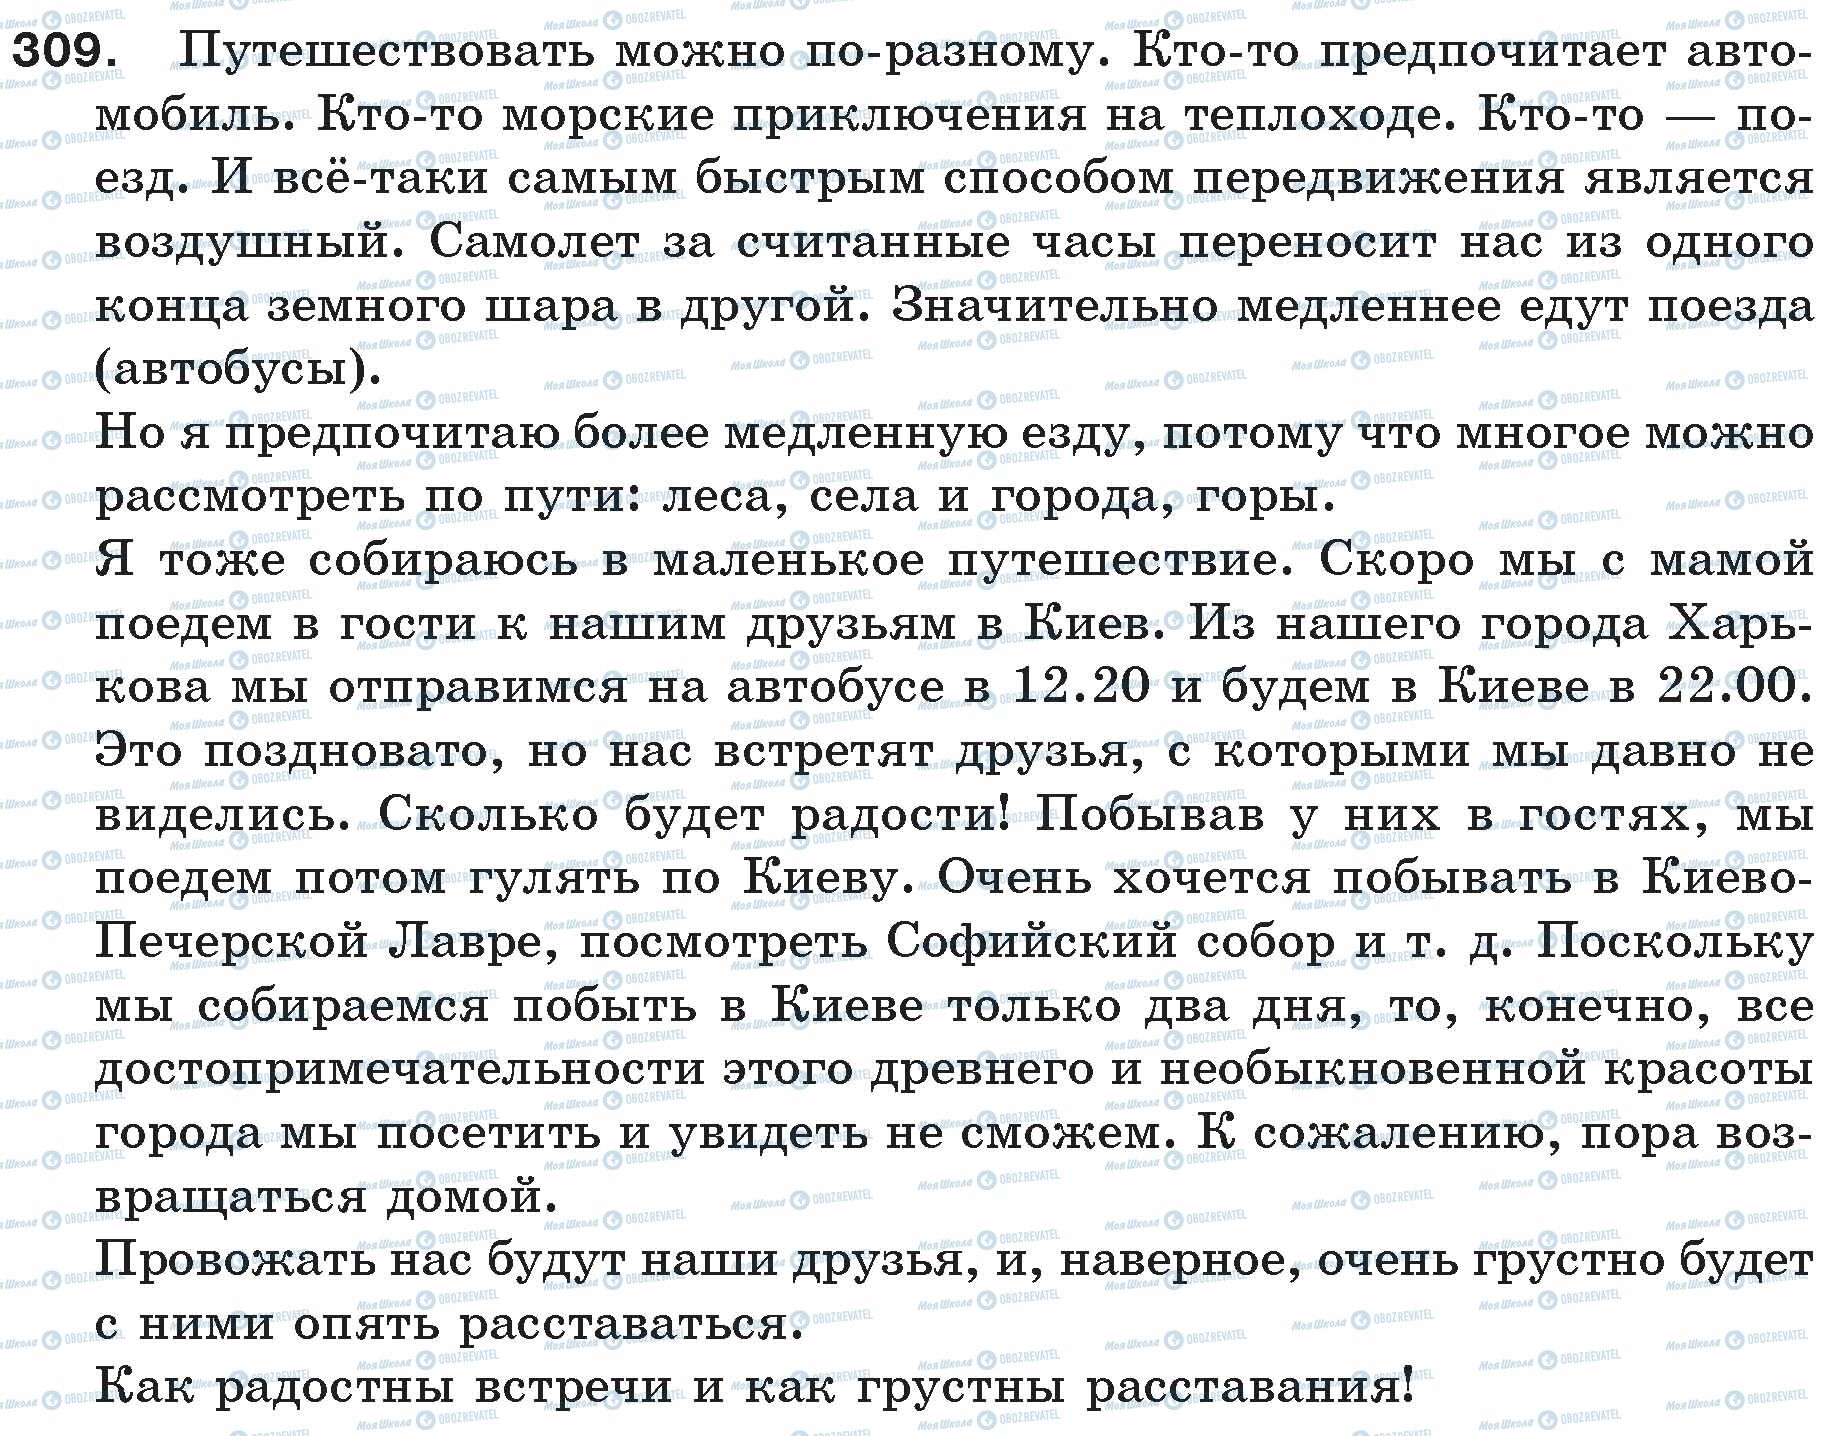 ГДЗ Російська мова 5 клас сторінка 309